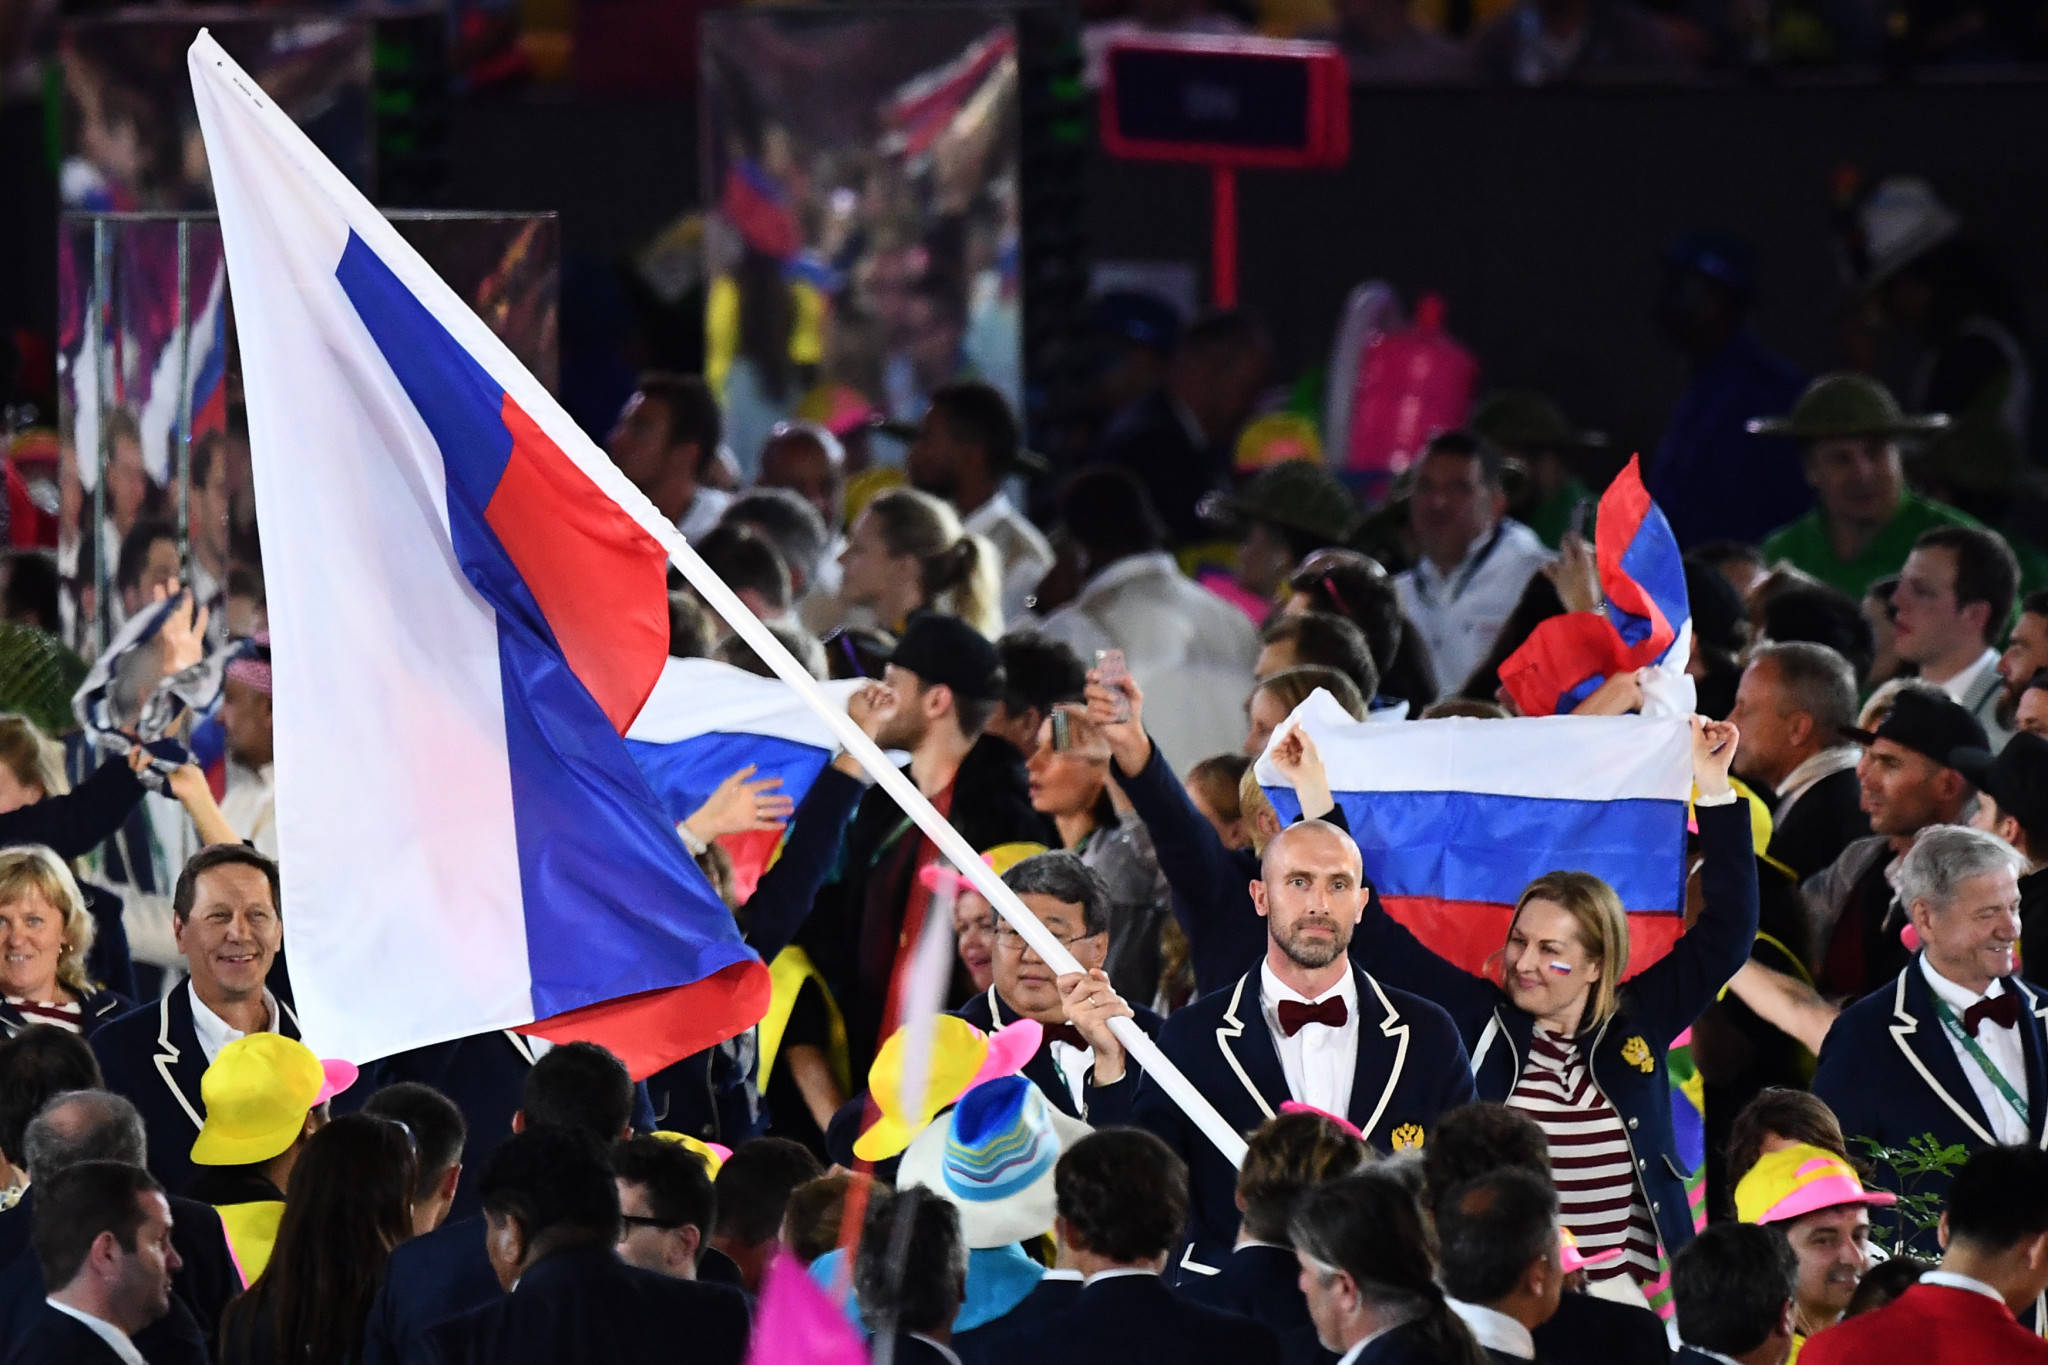 俄罗斯奥运队队旗图片